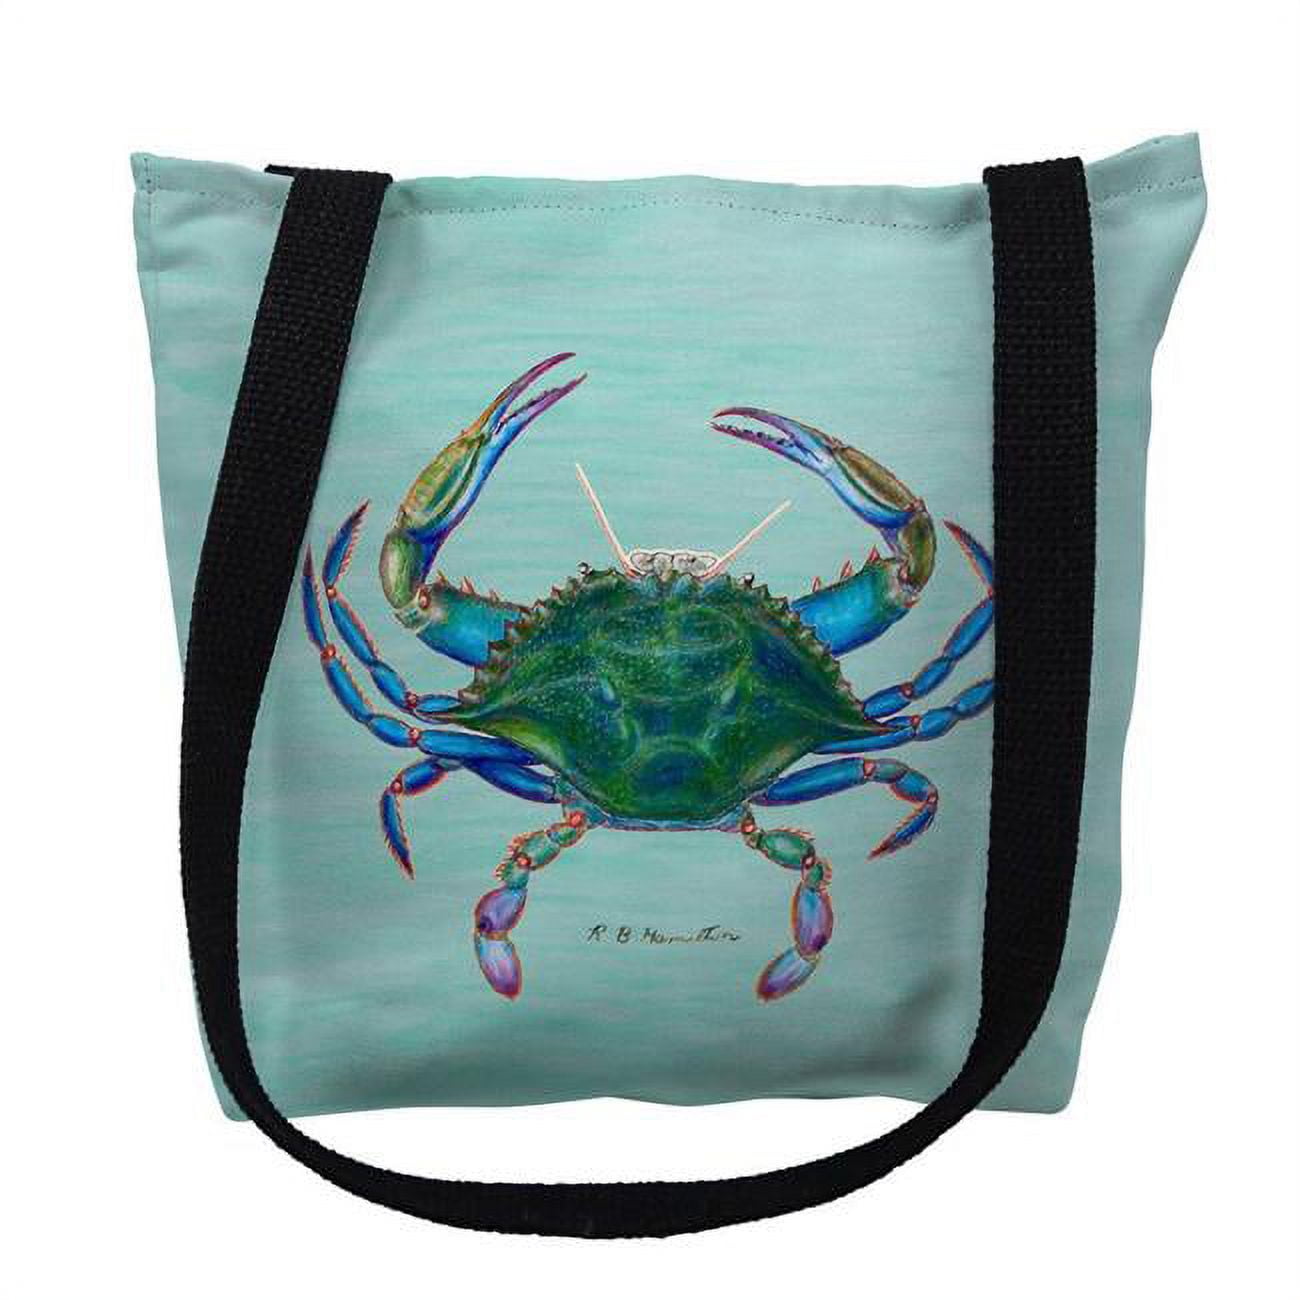 Ty004cm 16 X 16 In. Female Blue Crab On Aqua Tote Bag - Medium